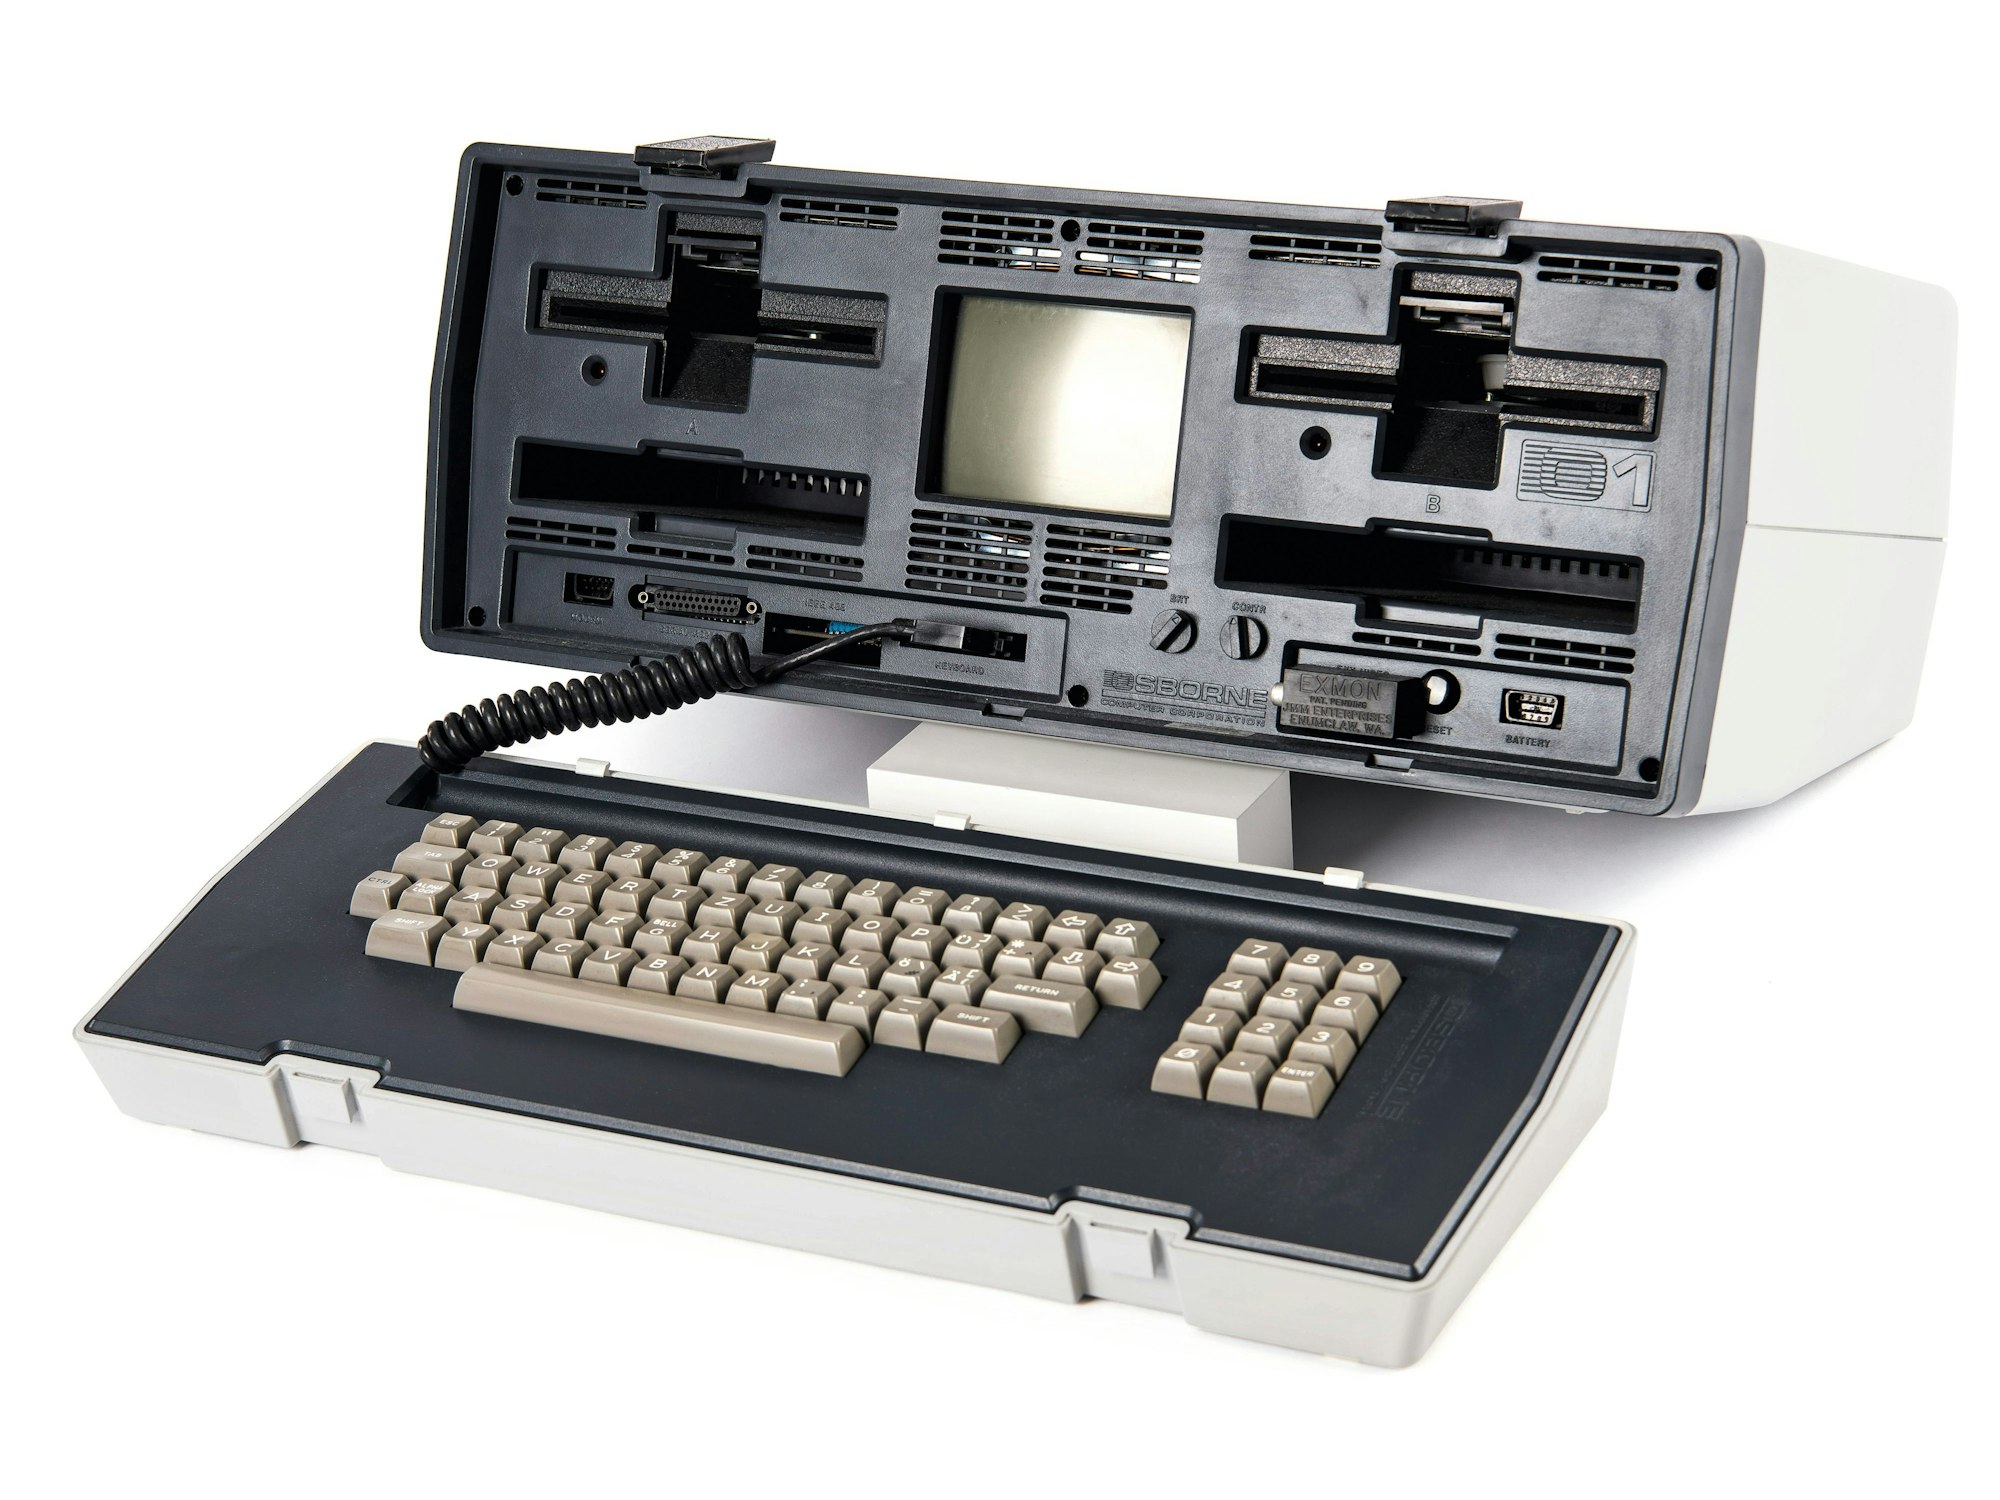 1981 wurde der Osborne 1 entwickelt von Adam Osborne (1939–2003), war der erste kommerzielle Laptop.

Bild zur Verfügung gestellt vom Taschen Verlag zum Buch "The Computer"

